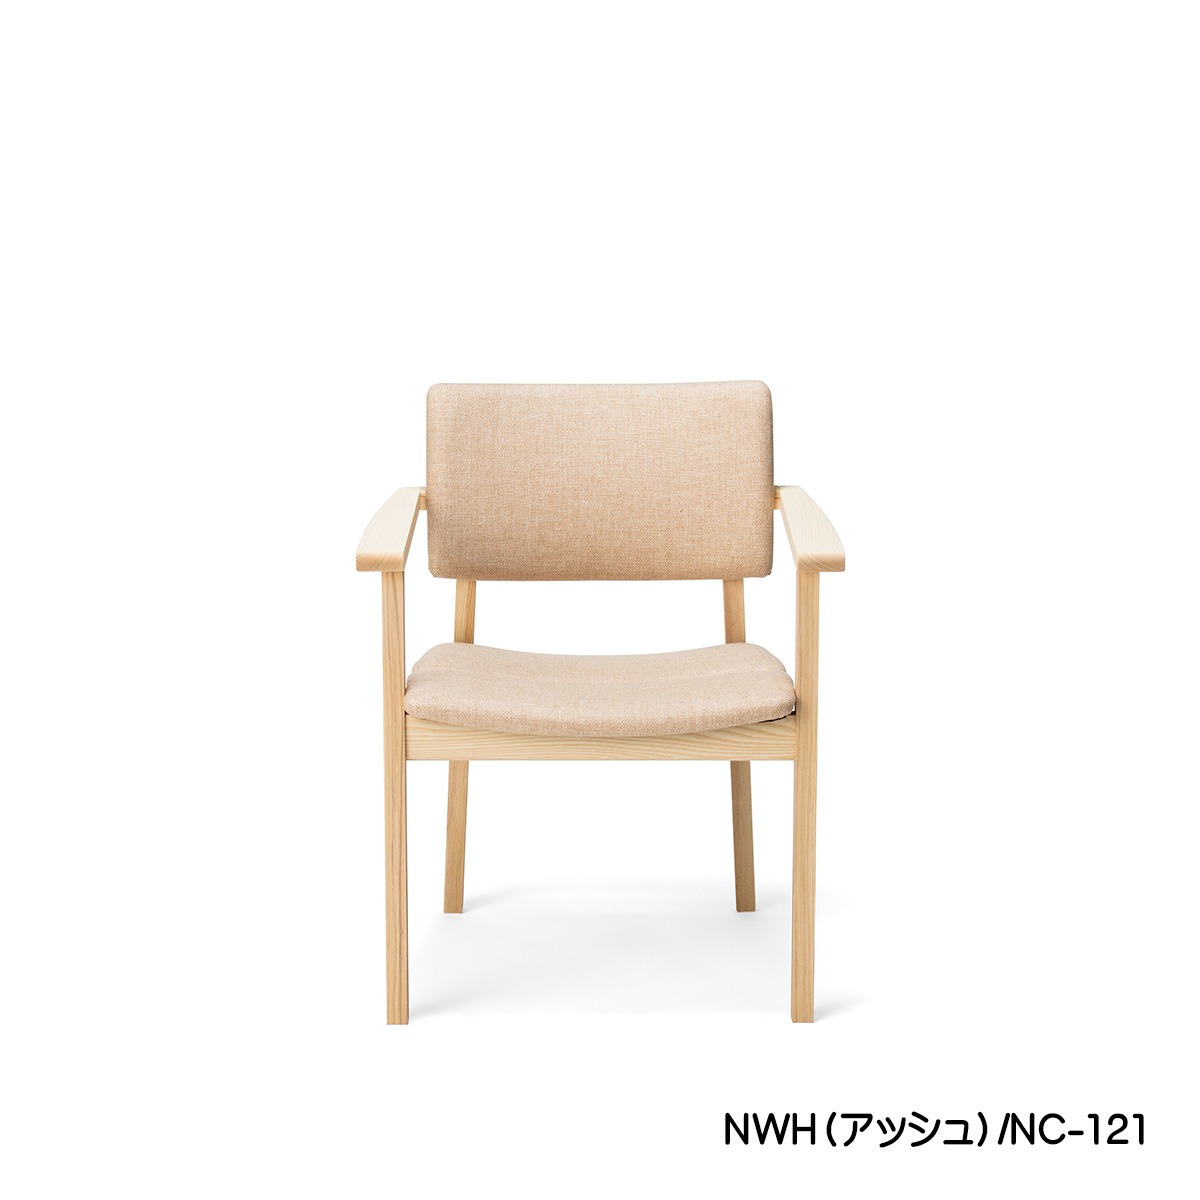 【日本製】肘掛けダイニングチェア「TOPO（トッポ）」（ナチュラルホワイト）は、座面と背もたれが優しくカーブしており、とても座り心地のいい座面と背もたれになっております。